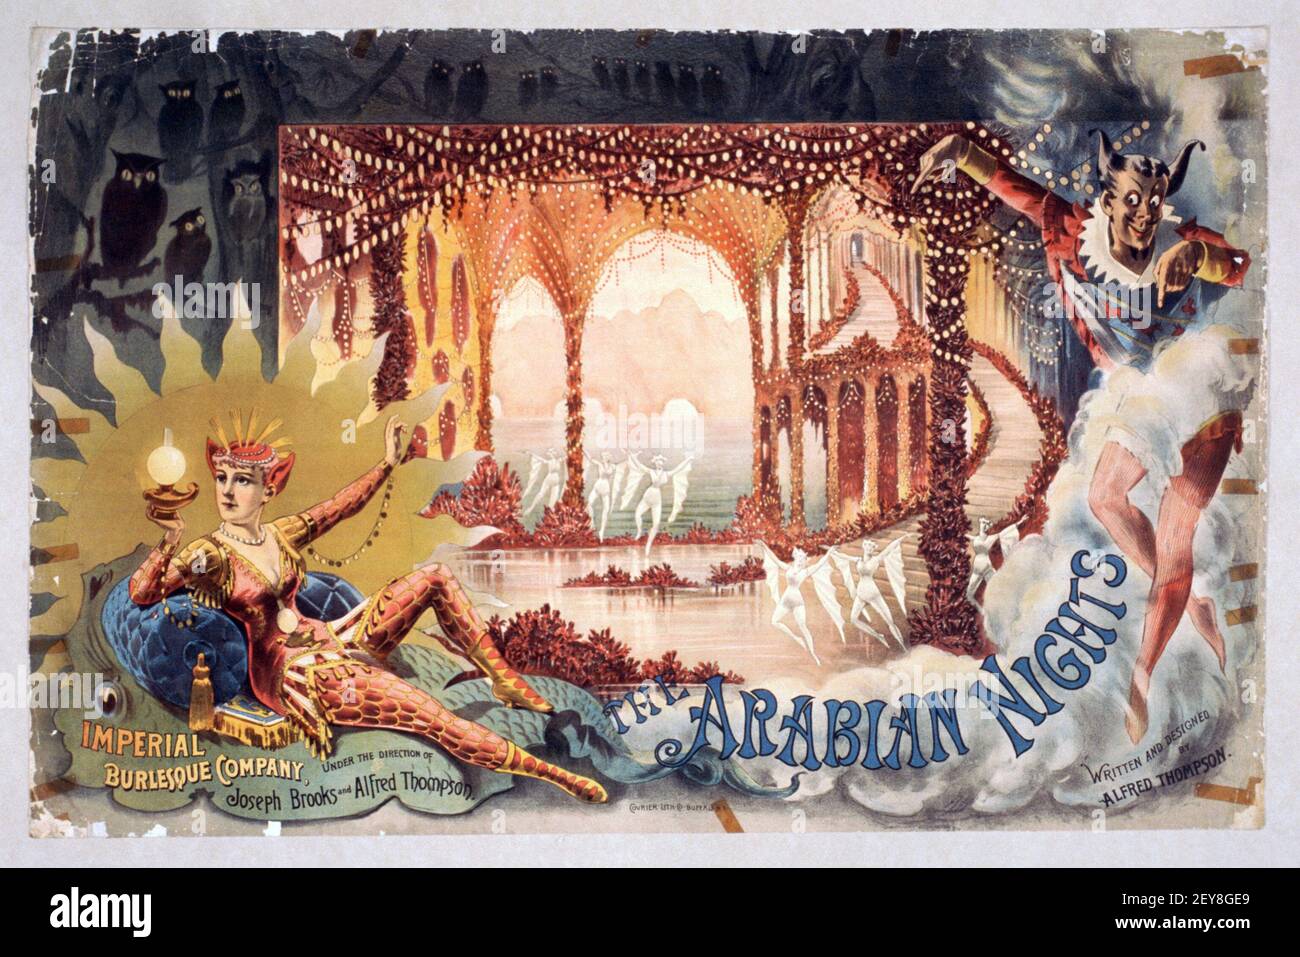 Die Arabischen Nächte. Imperial Burlesque Company. Poster, antik und im alten Stil. 1888. Stockfoto